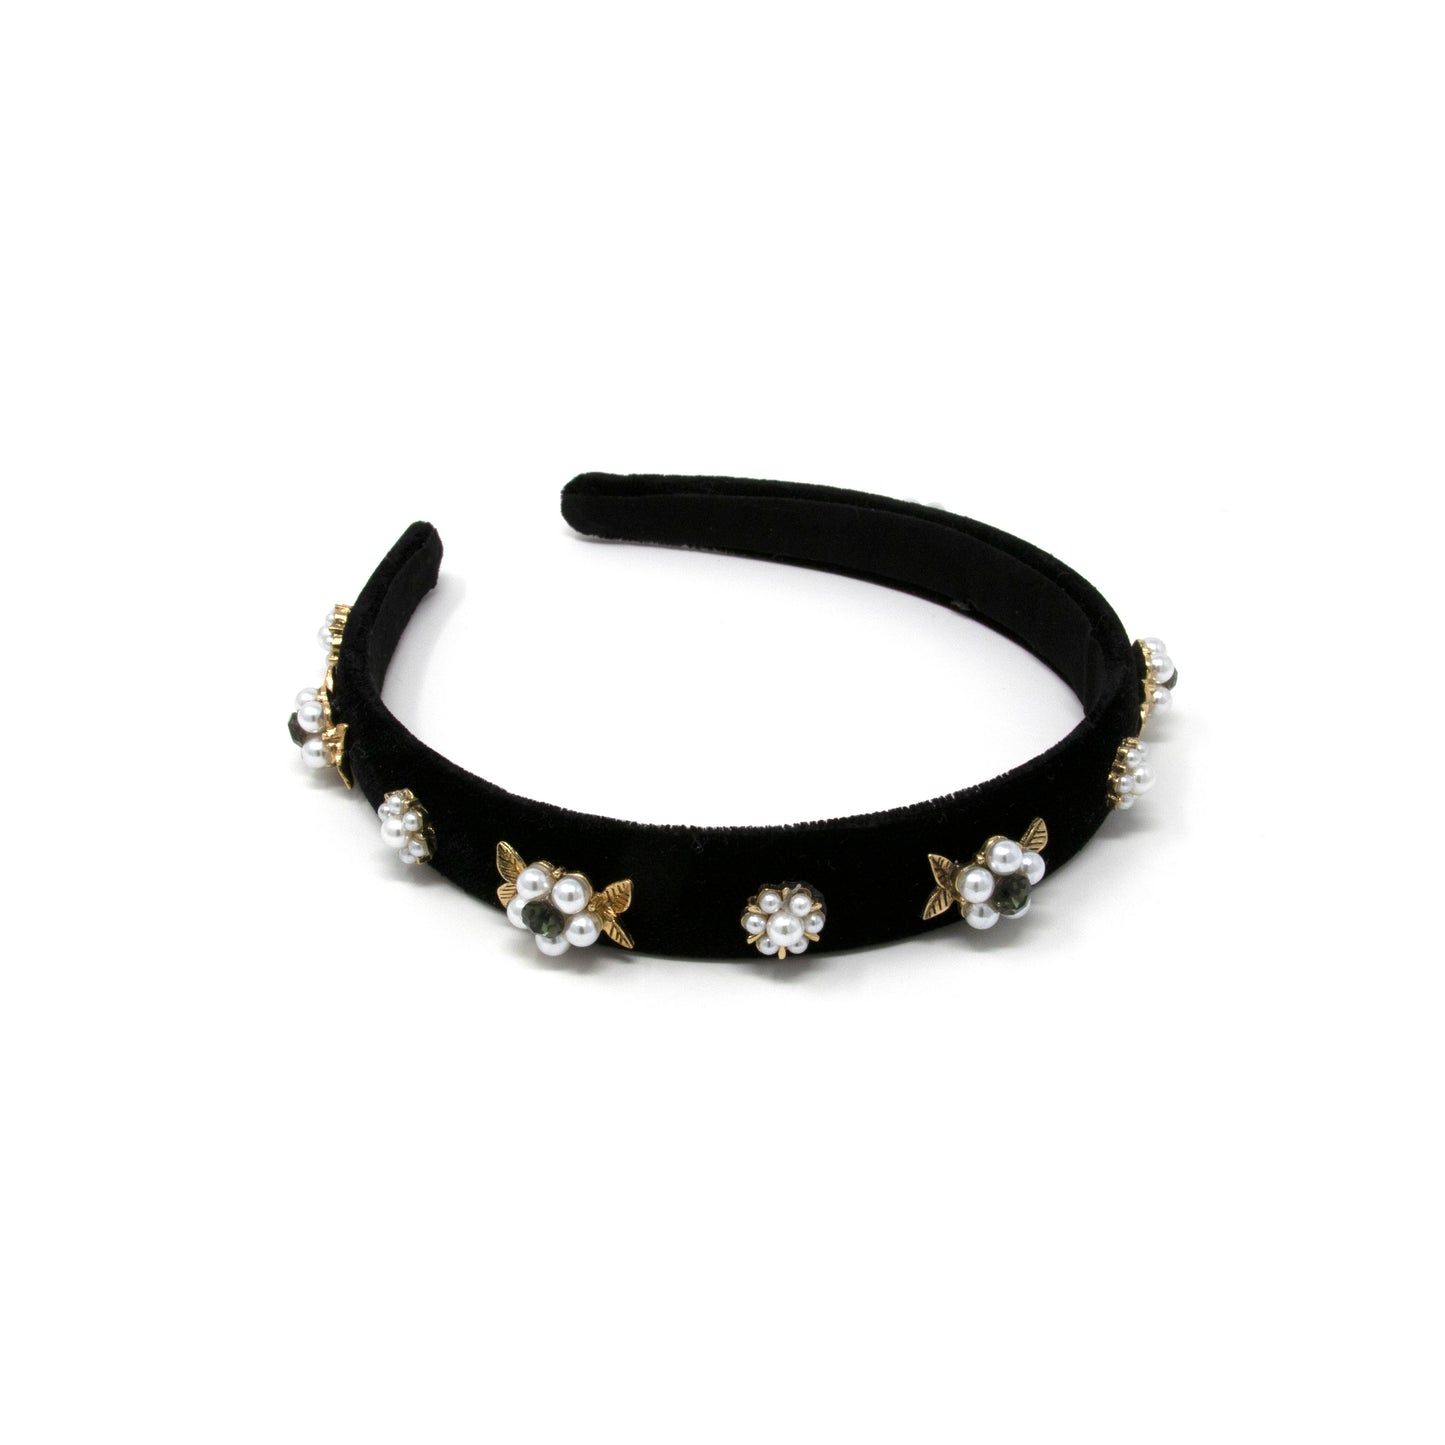 Embellished Flower Headband in Black Velvet